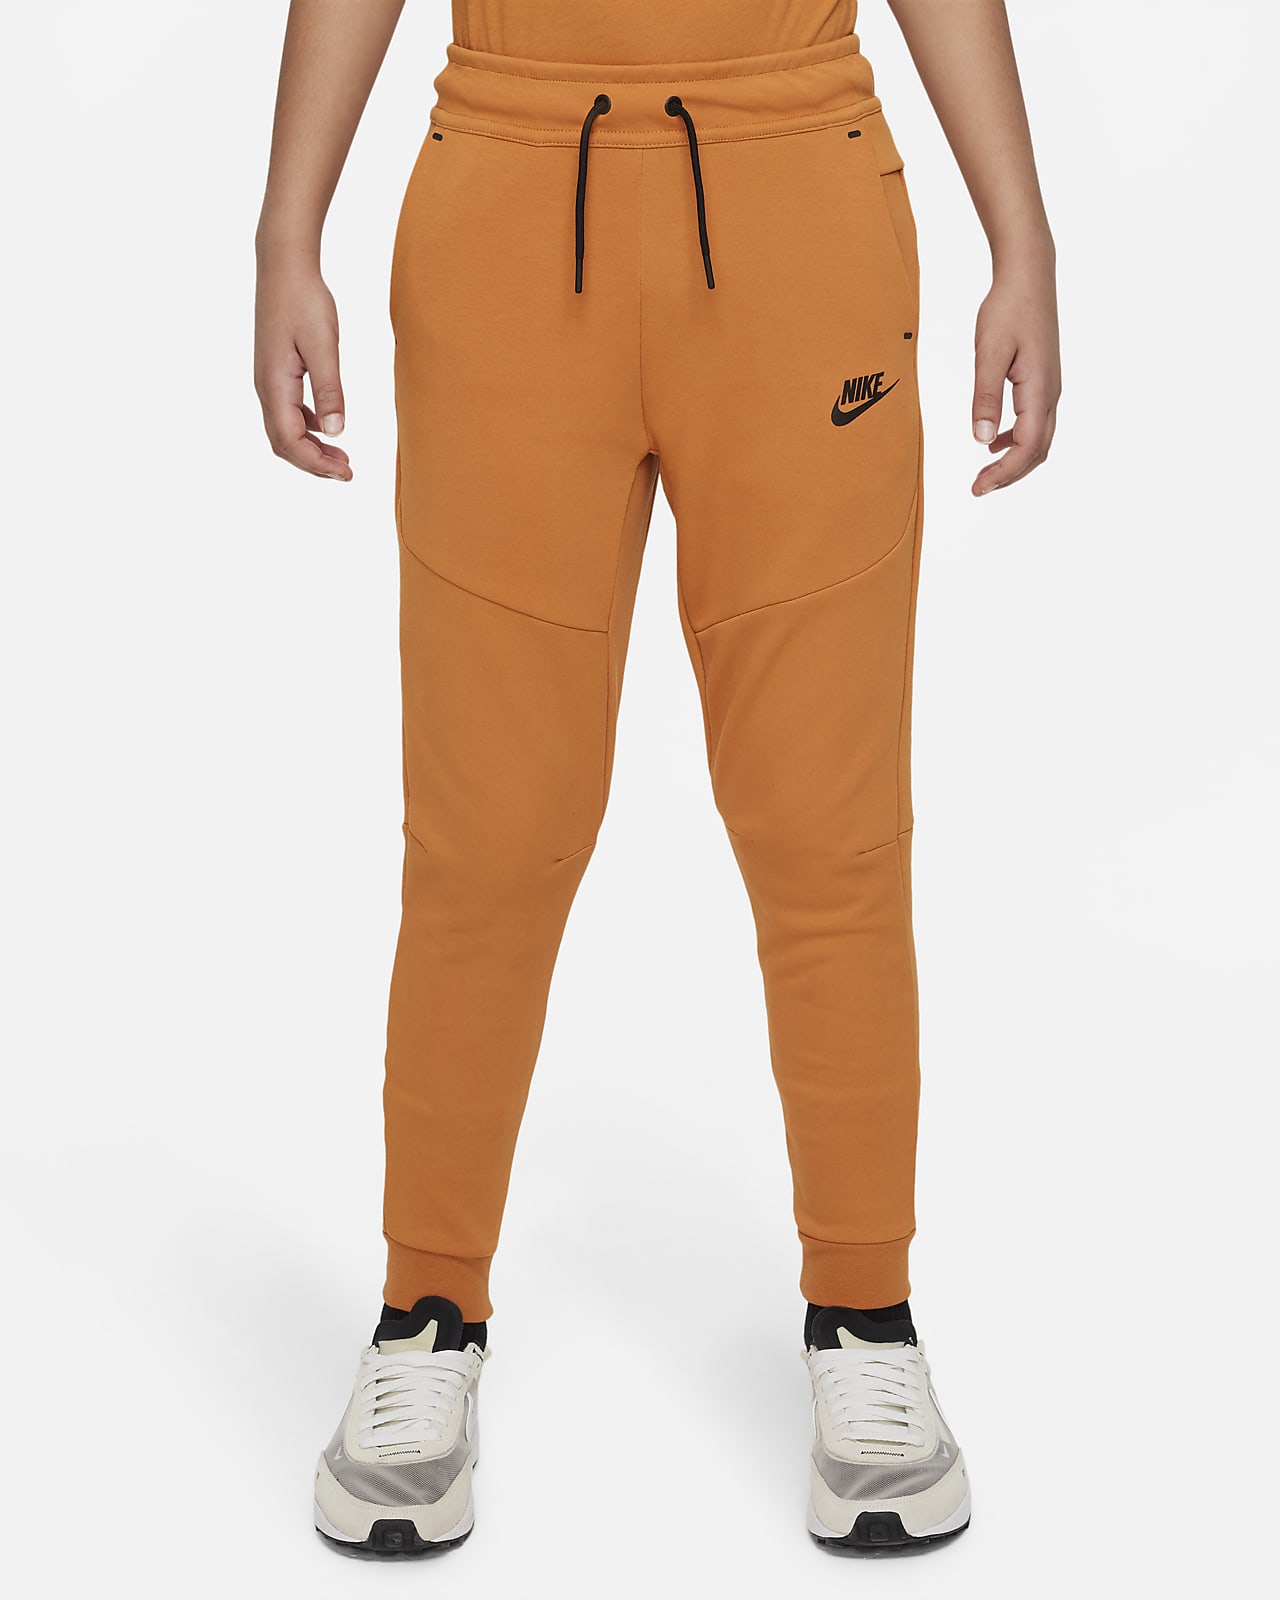 Buy Nike Boys Pant AO0745010Black WhiteXS at Amazonin